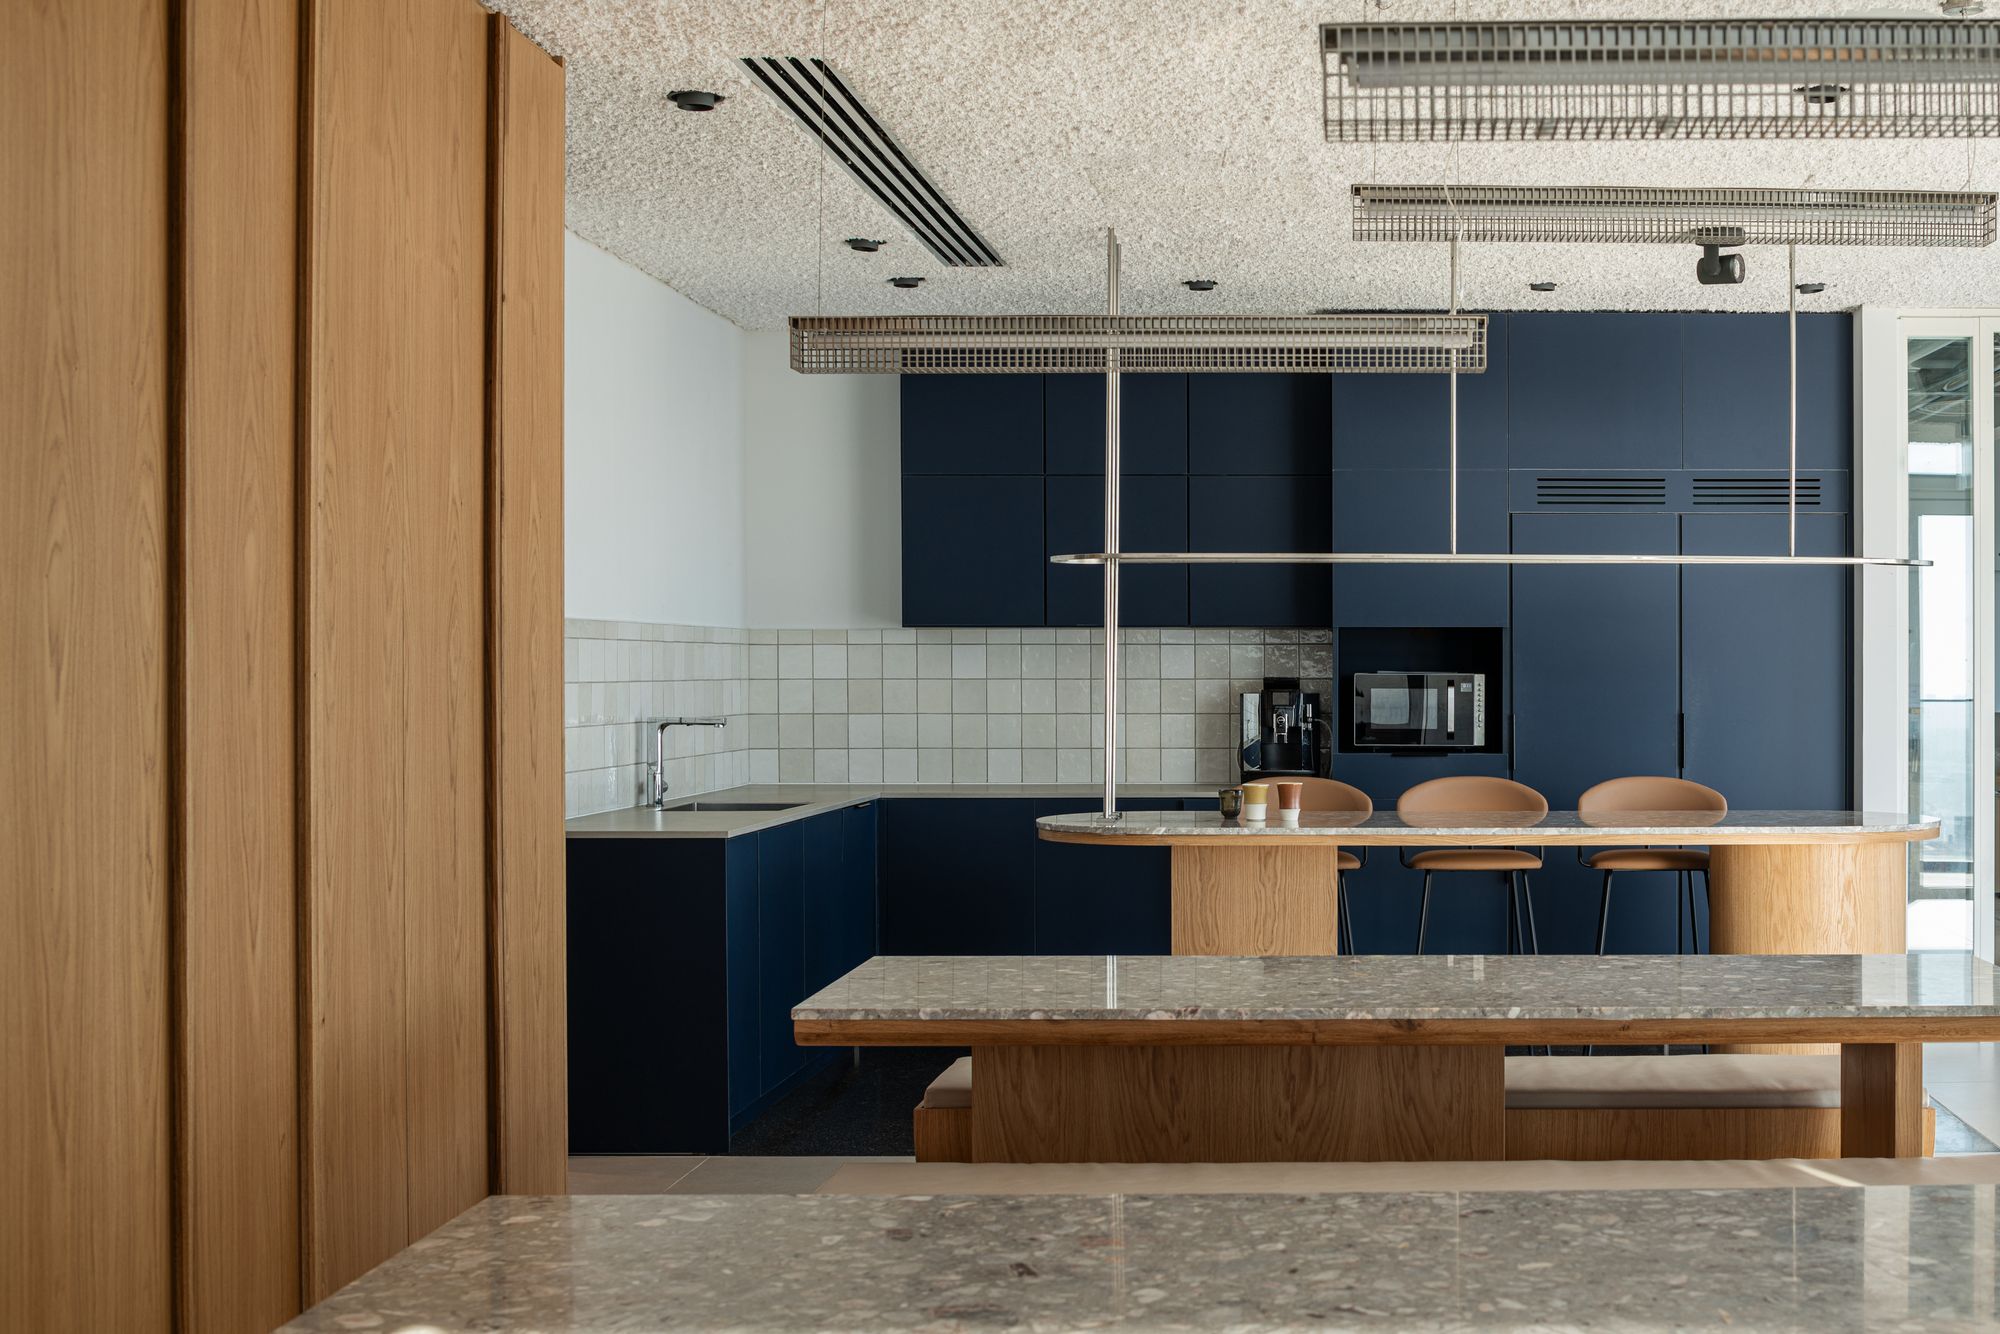 图片[2]|机密房地产客户办公室-Bnei Brak|ART-Arrakis | 建筑室内设计的创新与灵感